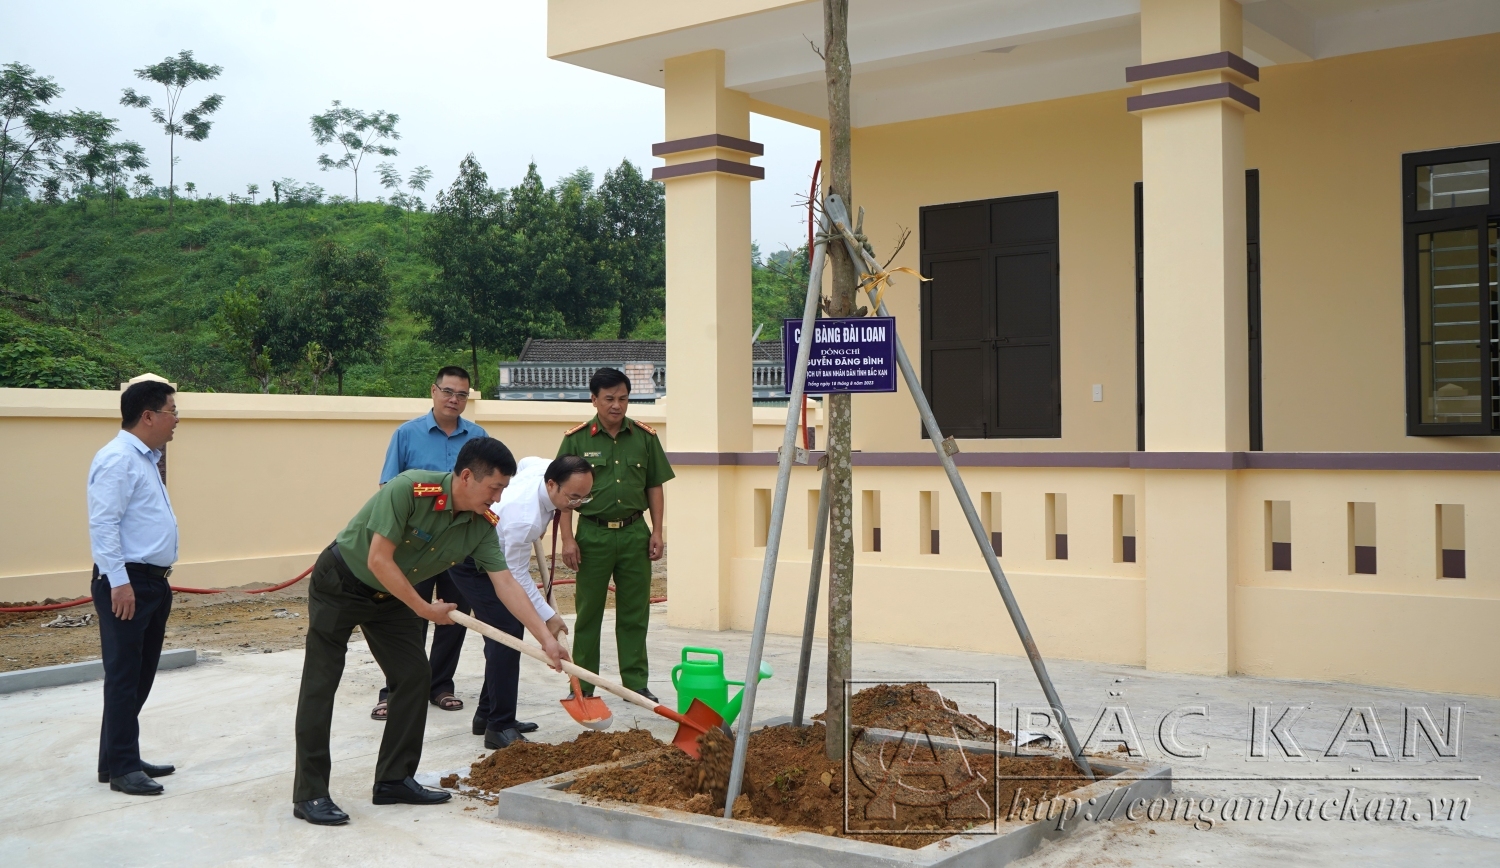 Đồng chí Nguyễn Đăng Bình – Chủ tịch UBND tỉnh và các đại biểu trồng cây tại trụ sở Công an xã Nông Thượng, thành phố Bắc Kạn